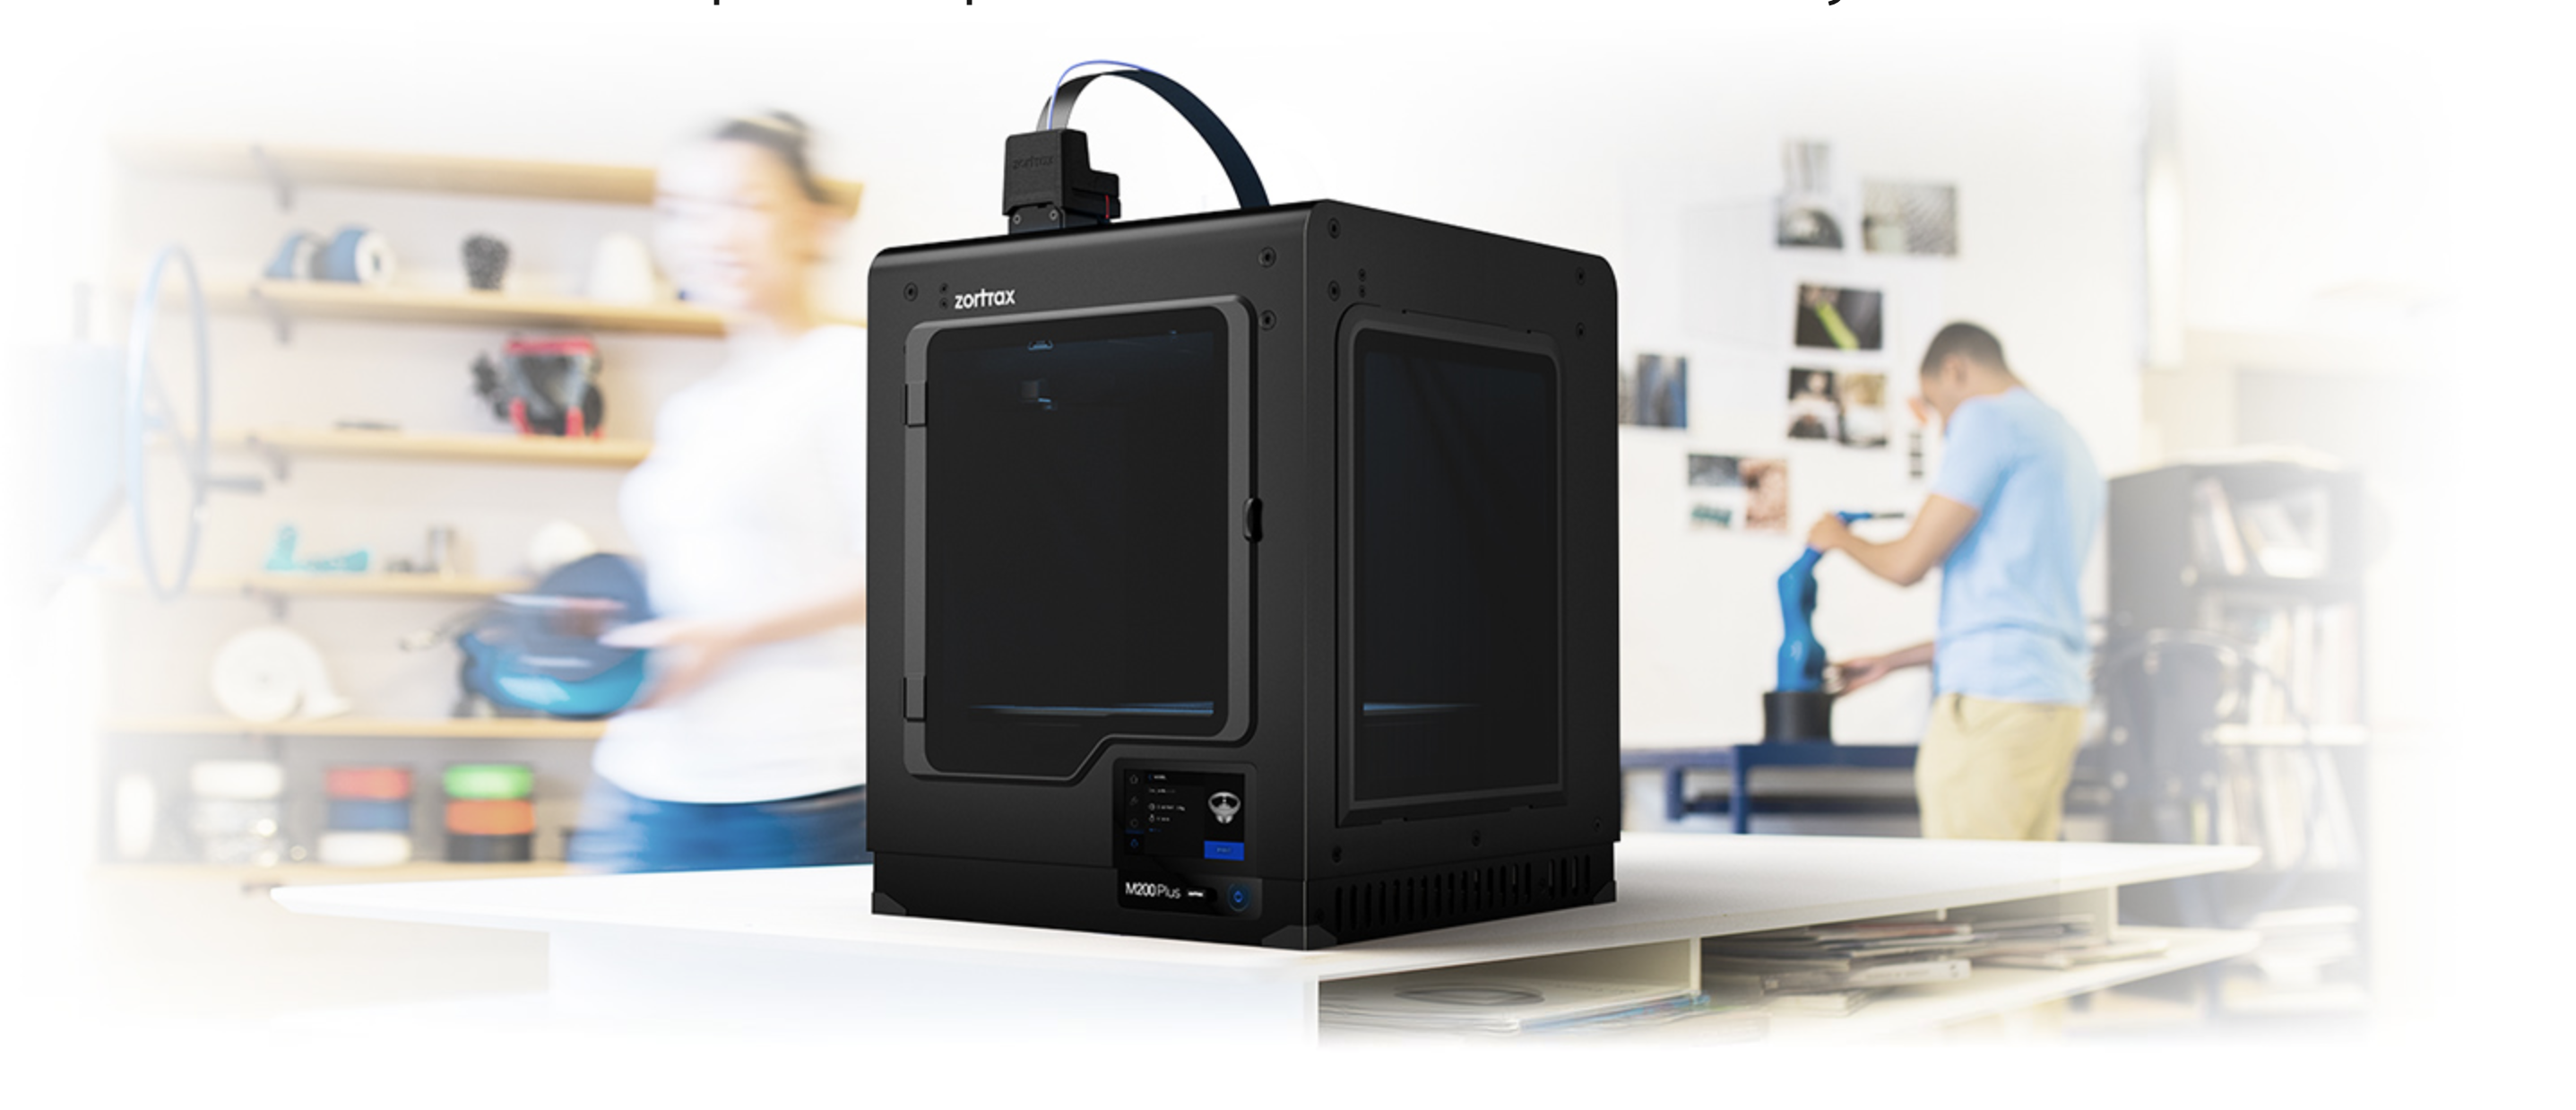 Machines-3D, N°1 distributeur europeen pour meilleures imprimantes 3D,  scanners 3D, équipement Fablab, consommables, accessoires